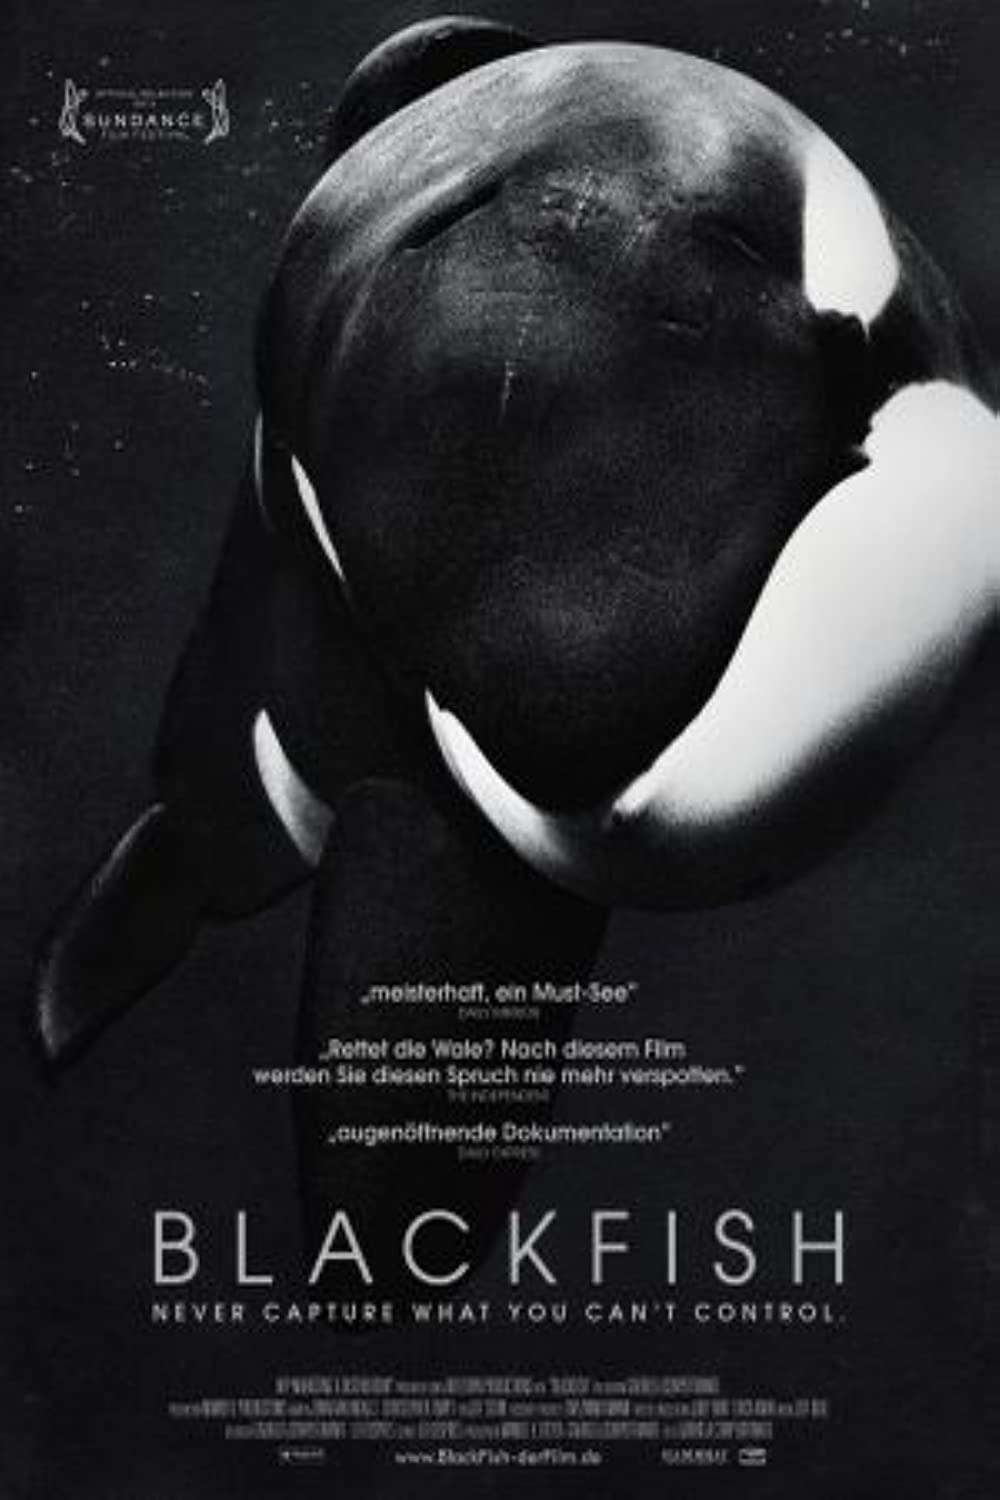 Filmbeschreibung zu Blackfish (OV)